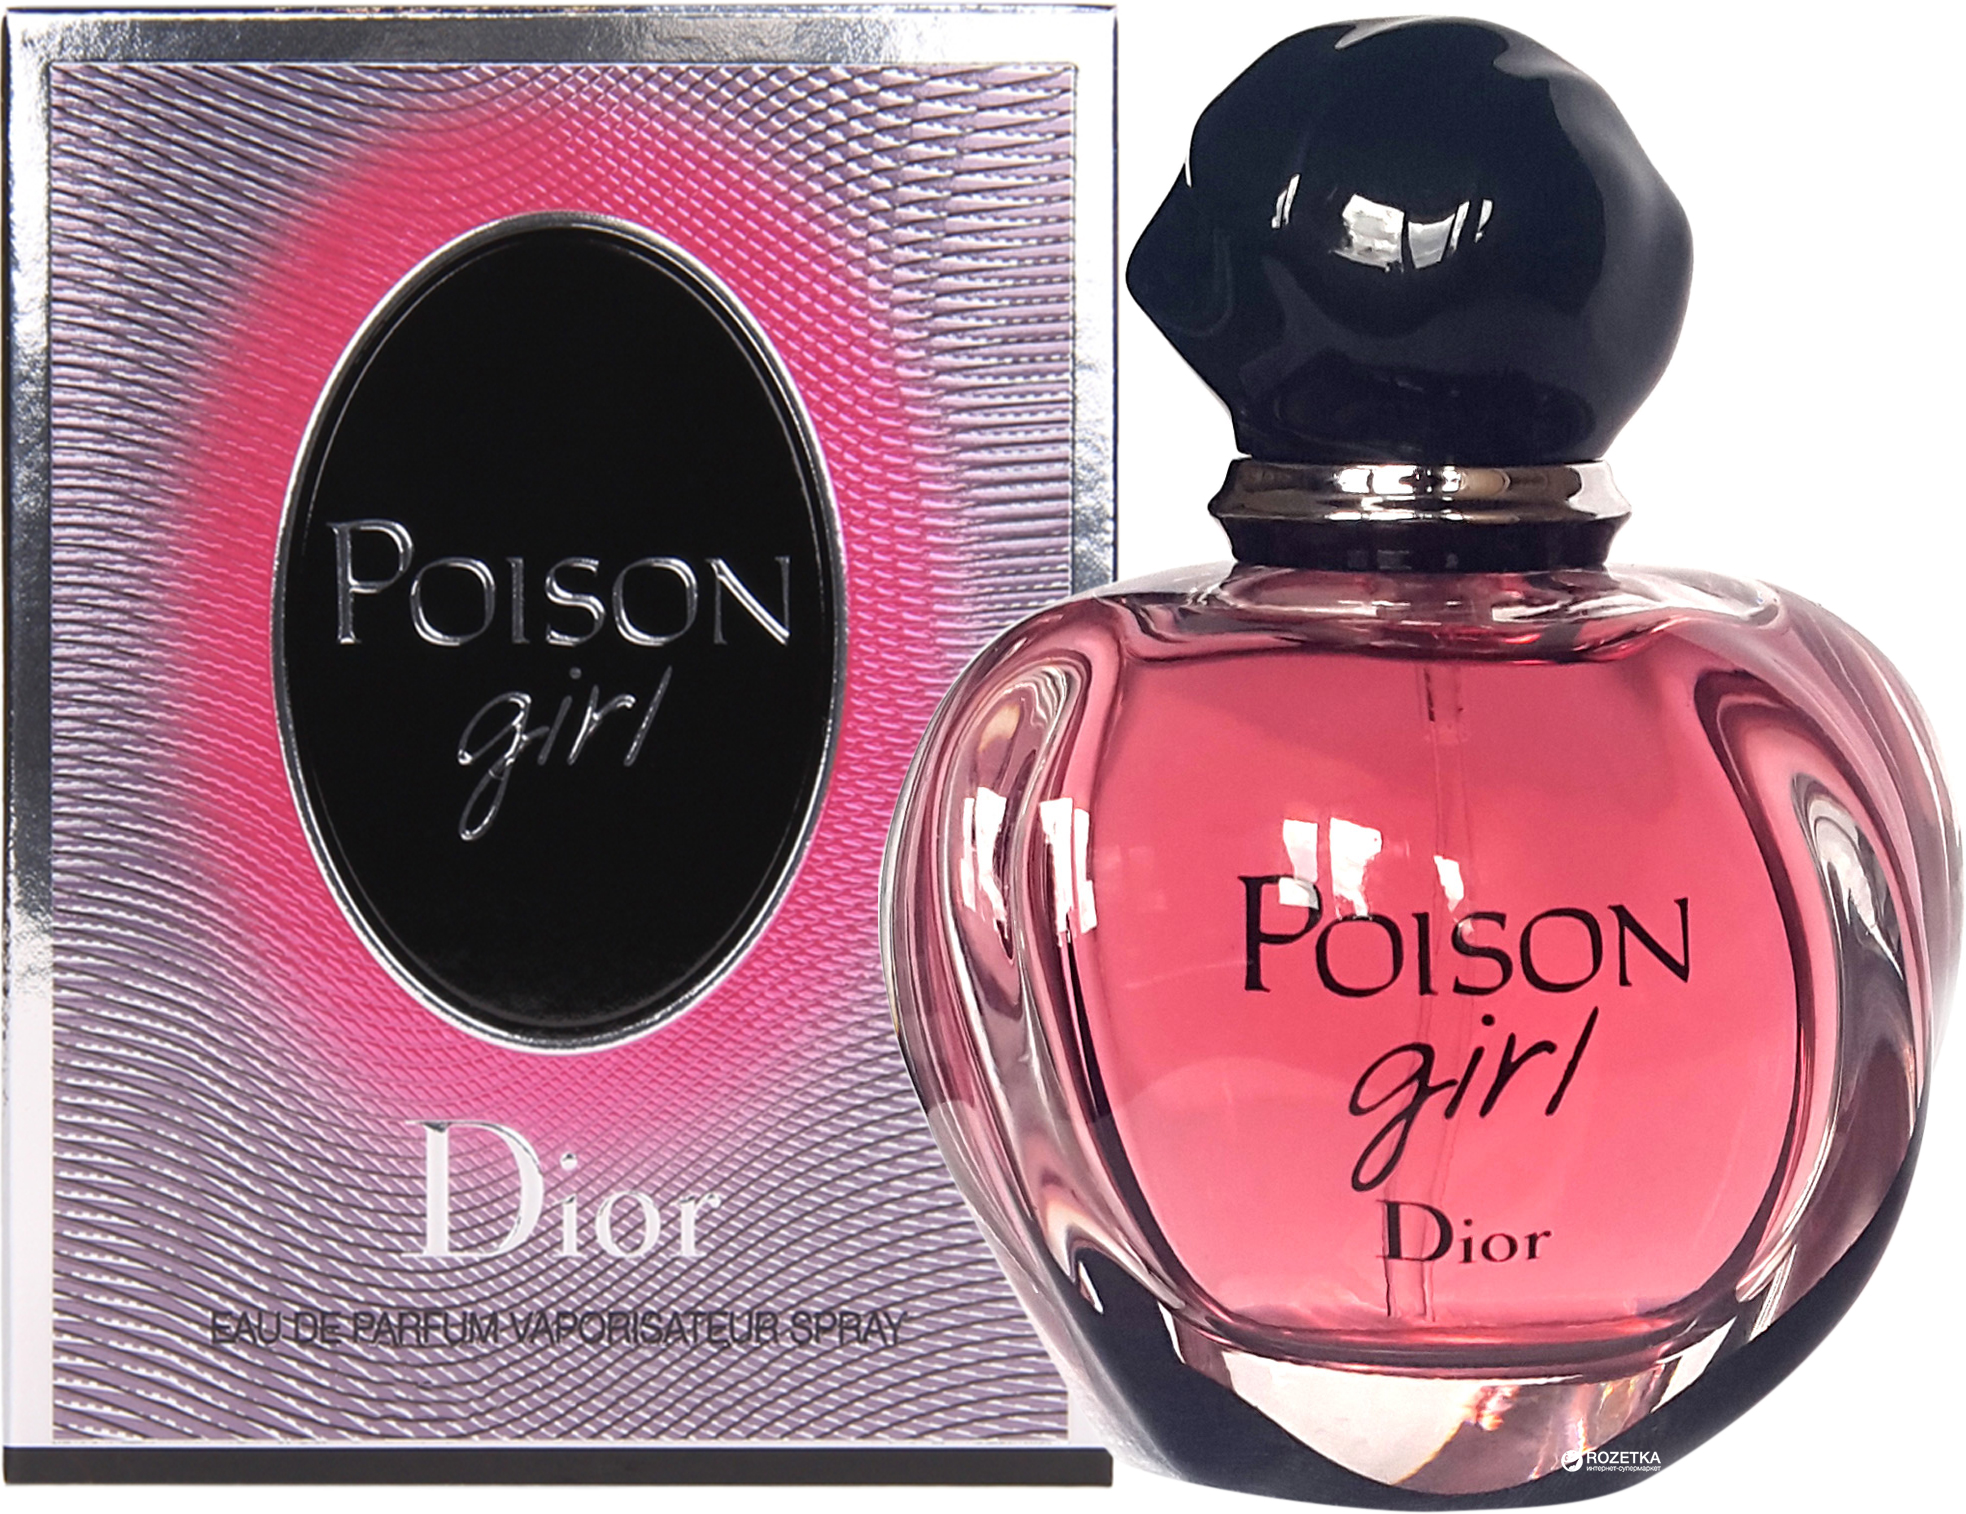 Poison Girl Christian Dior for women kutu şişe yakından.jpg